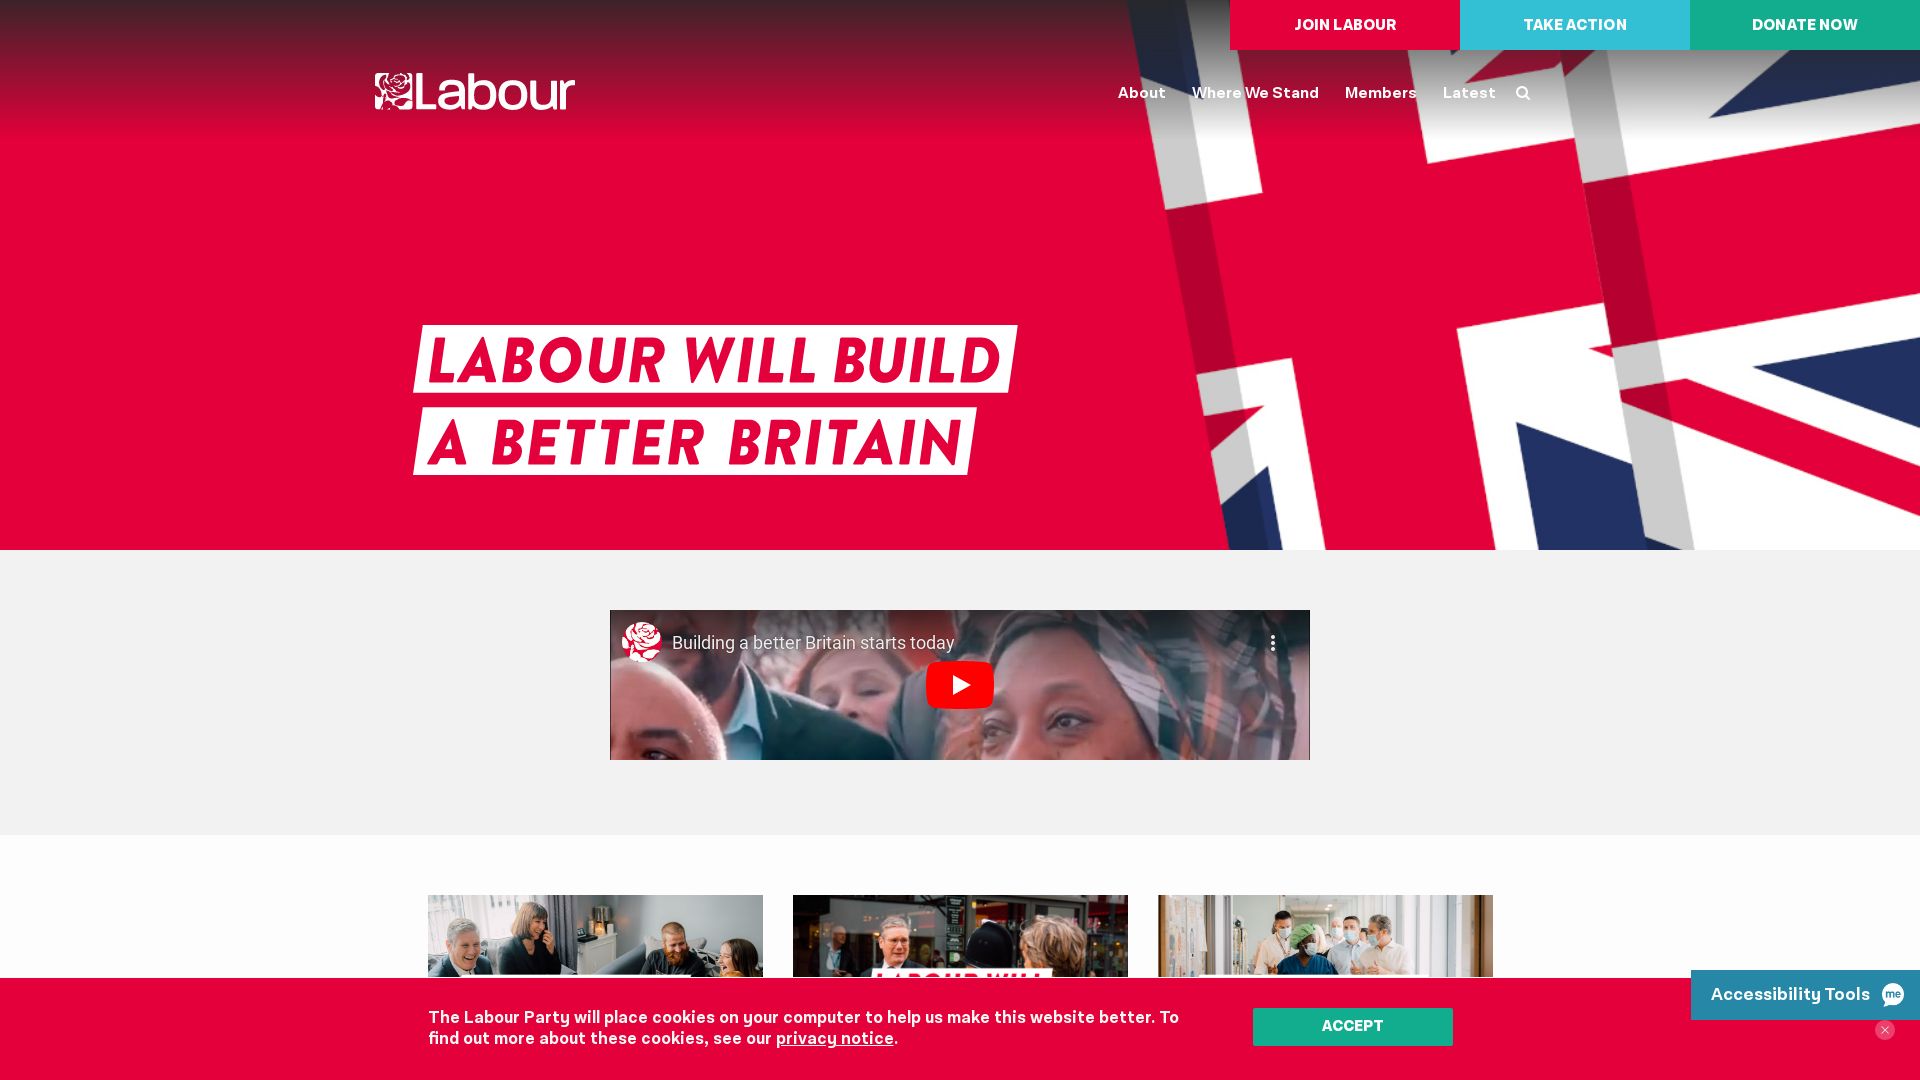 网站状态 labour.org.uk 是  在线的